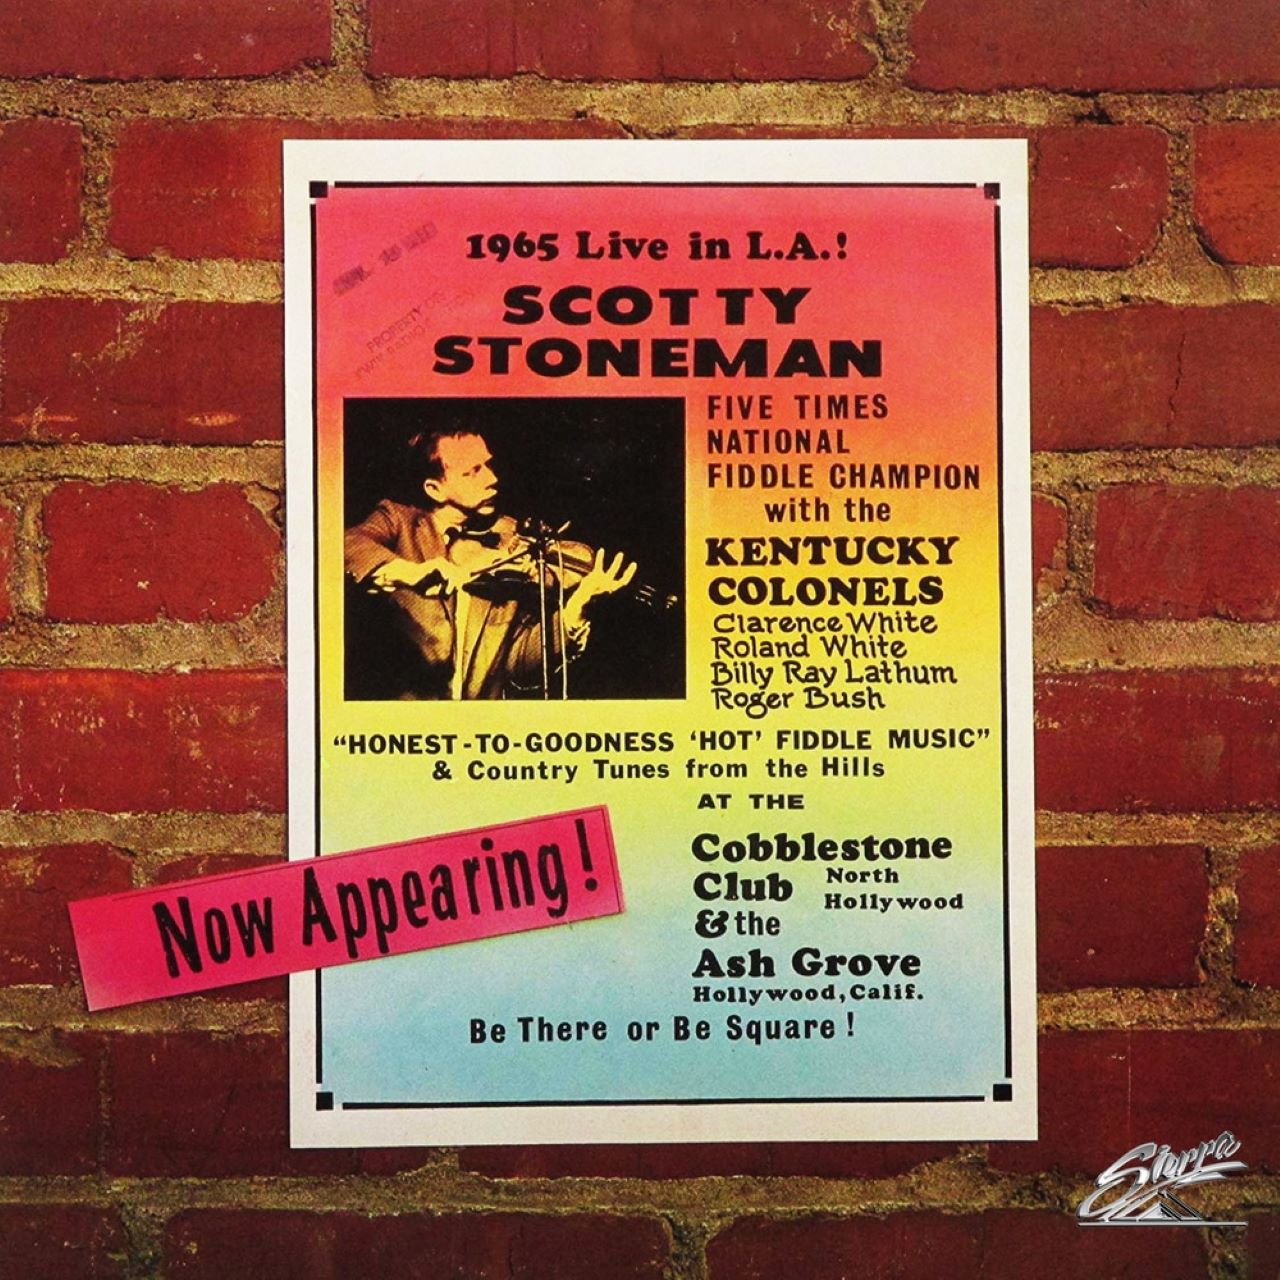 Scotty Stoneman - Live In L.A. cover album